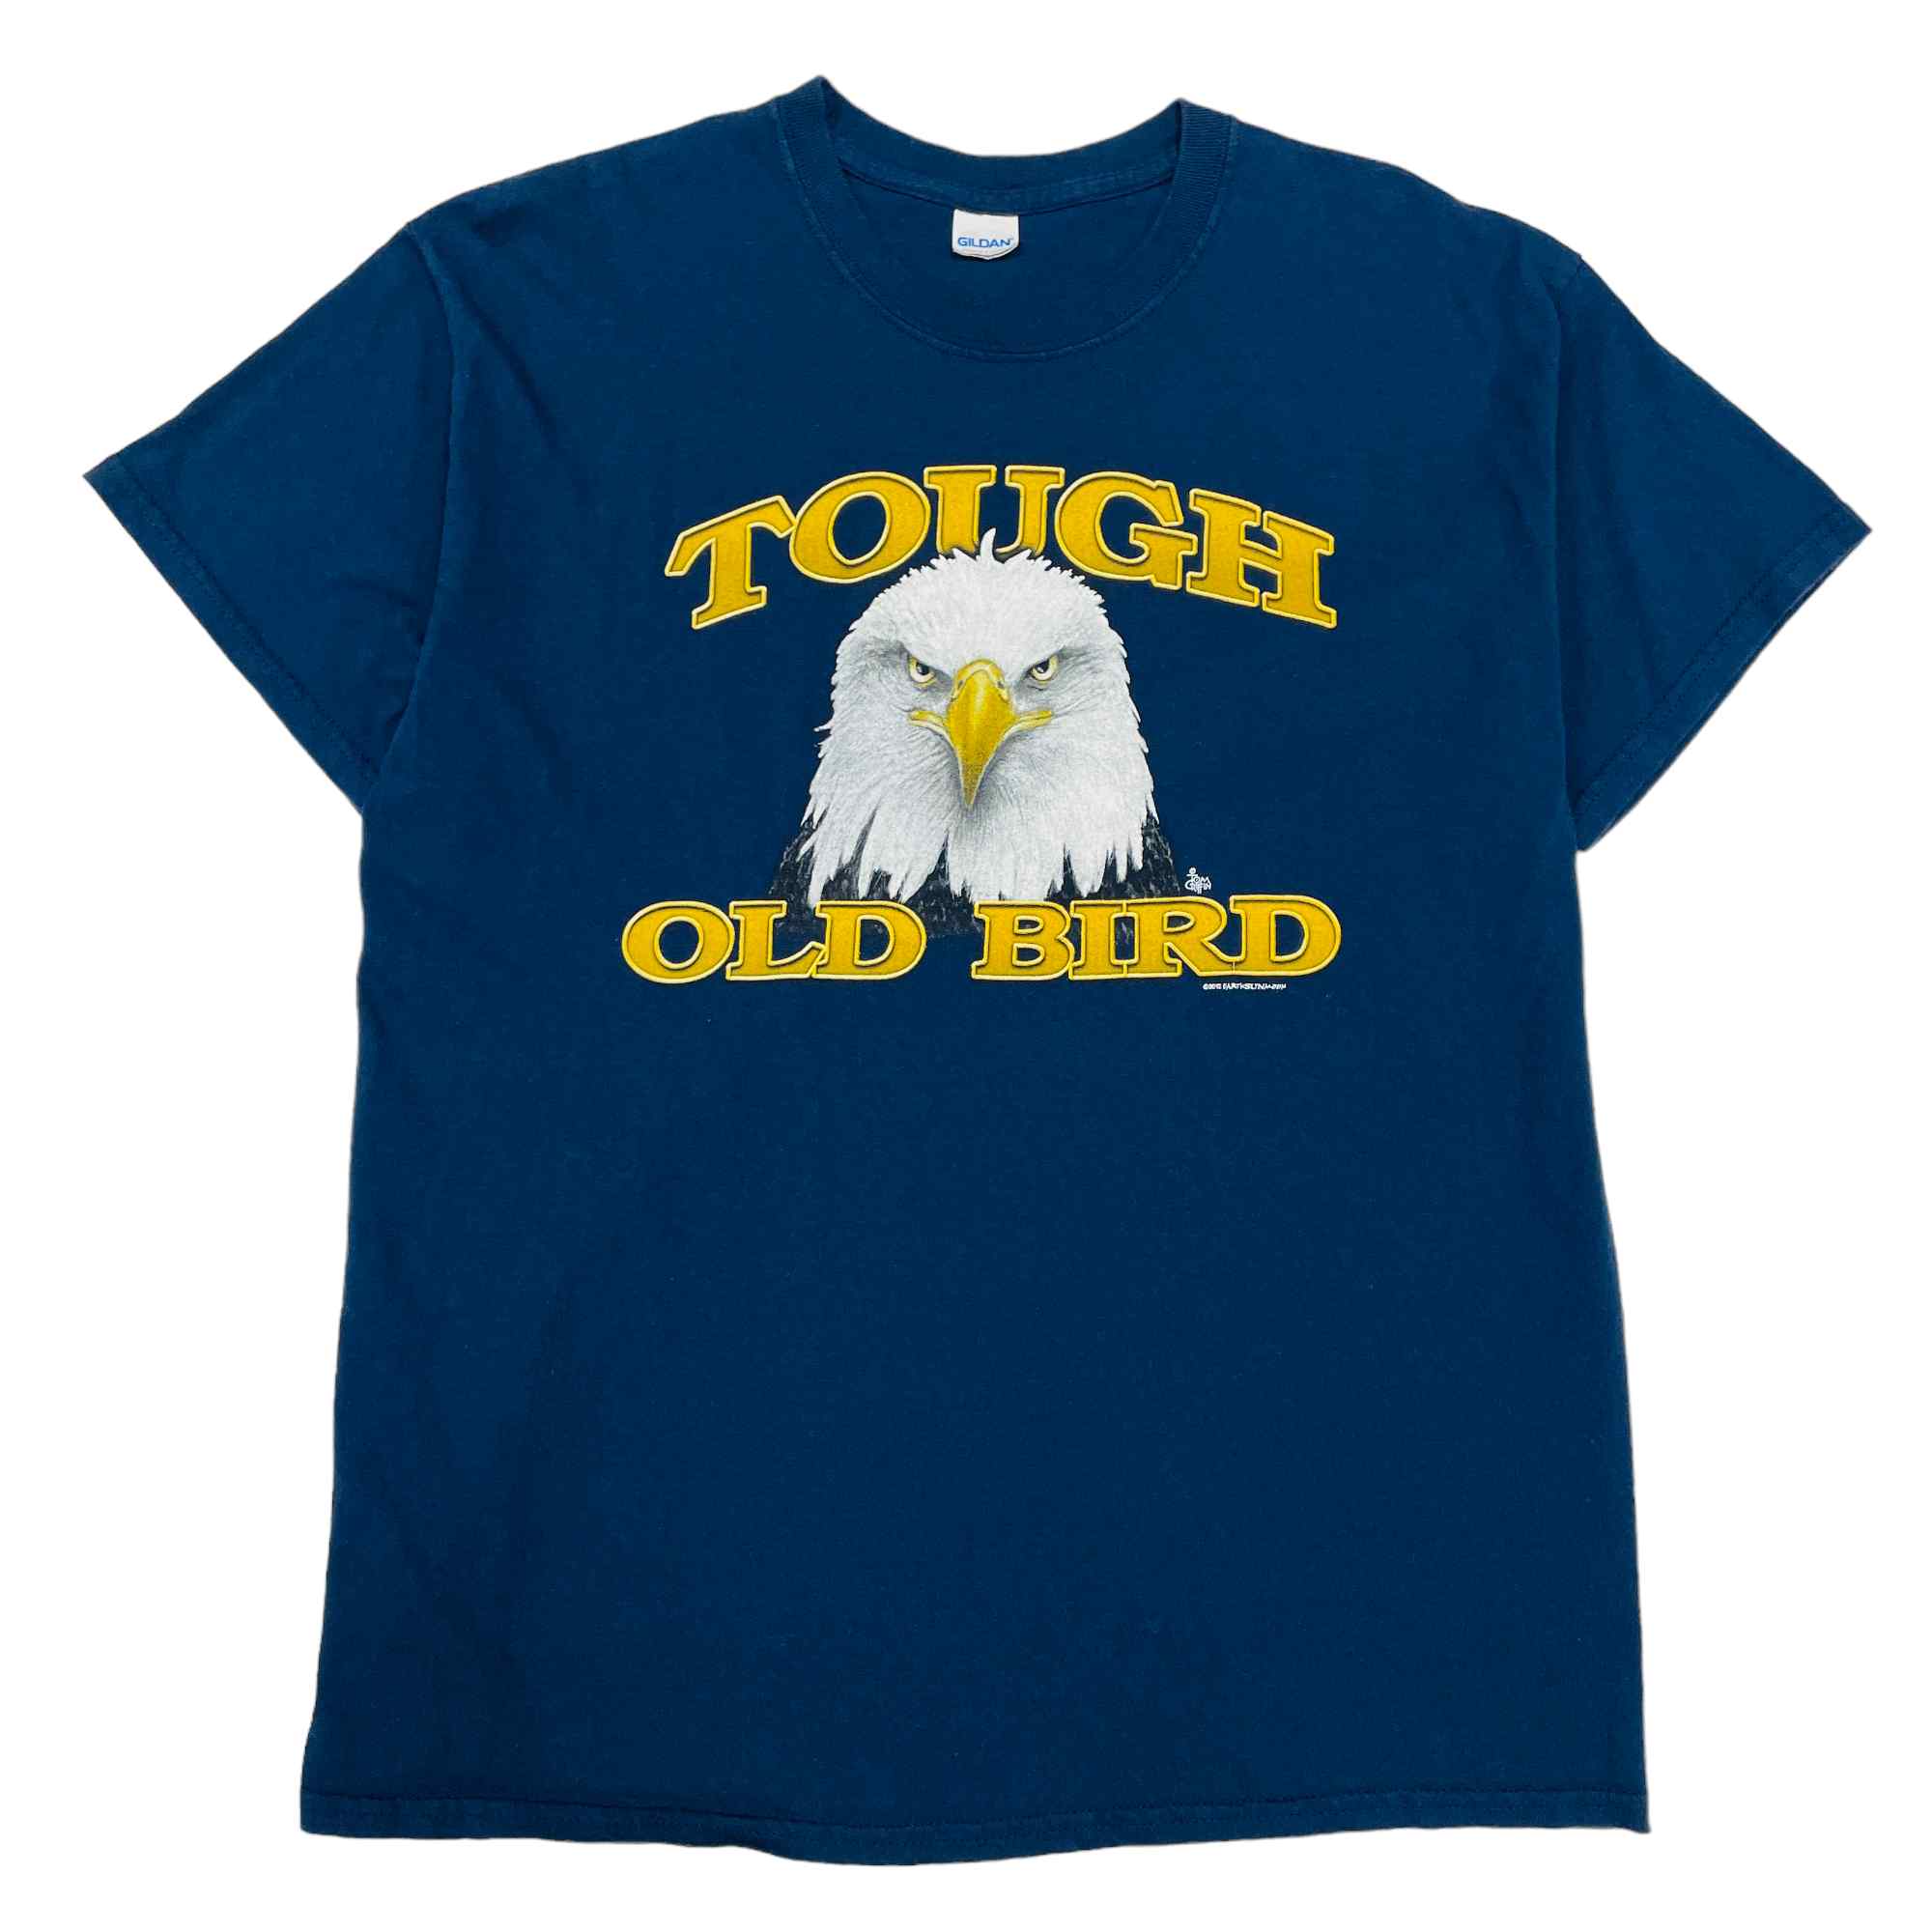 'Tough Old Bird' Graphic T-Shirt With Gildan Tag - XL